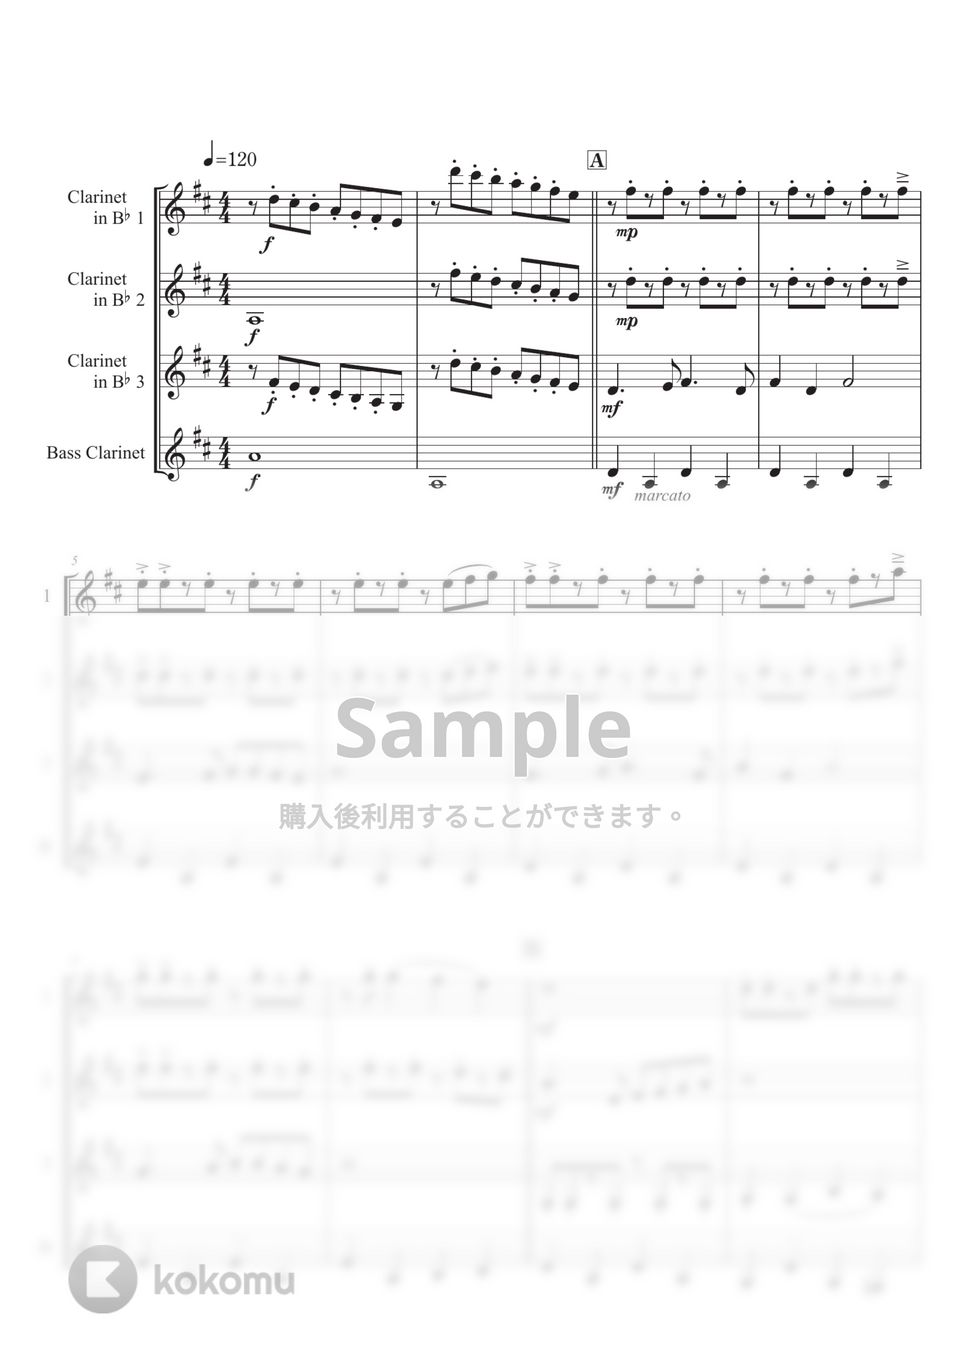 Richard Rodgers - 【クラリネット四重奏】ドレミのうた (『サウンド・オブ・ミュージック』より) by 栗原義継